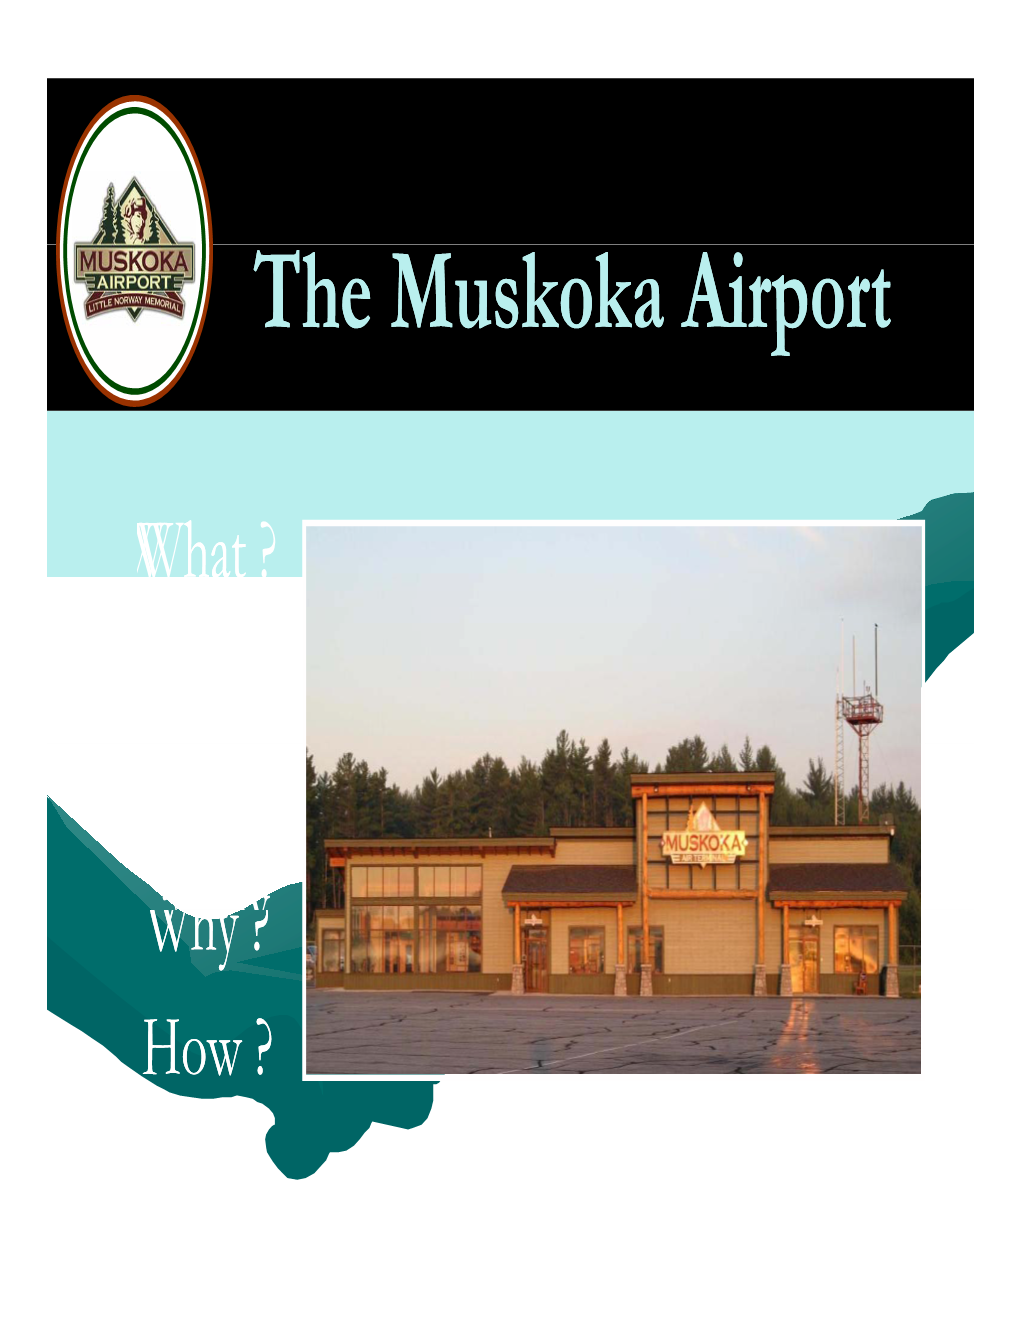 The Muskoka Airport